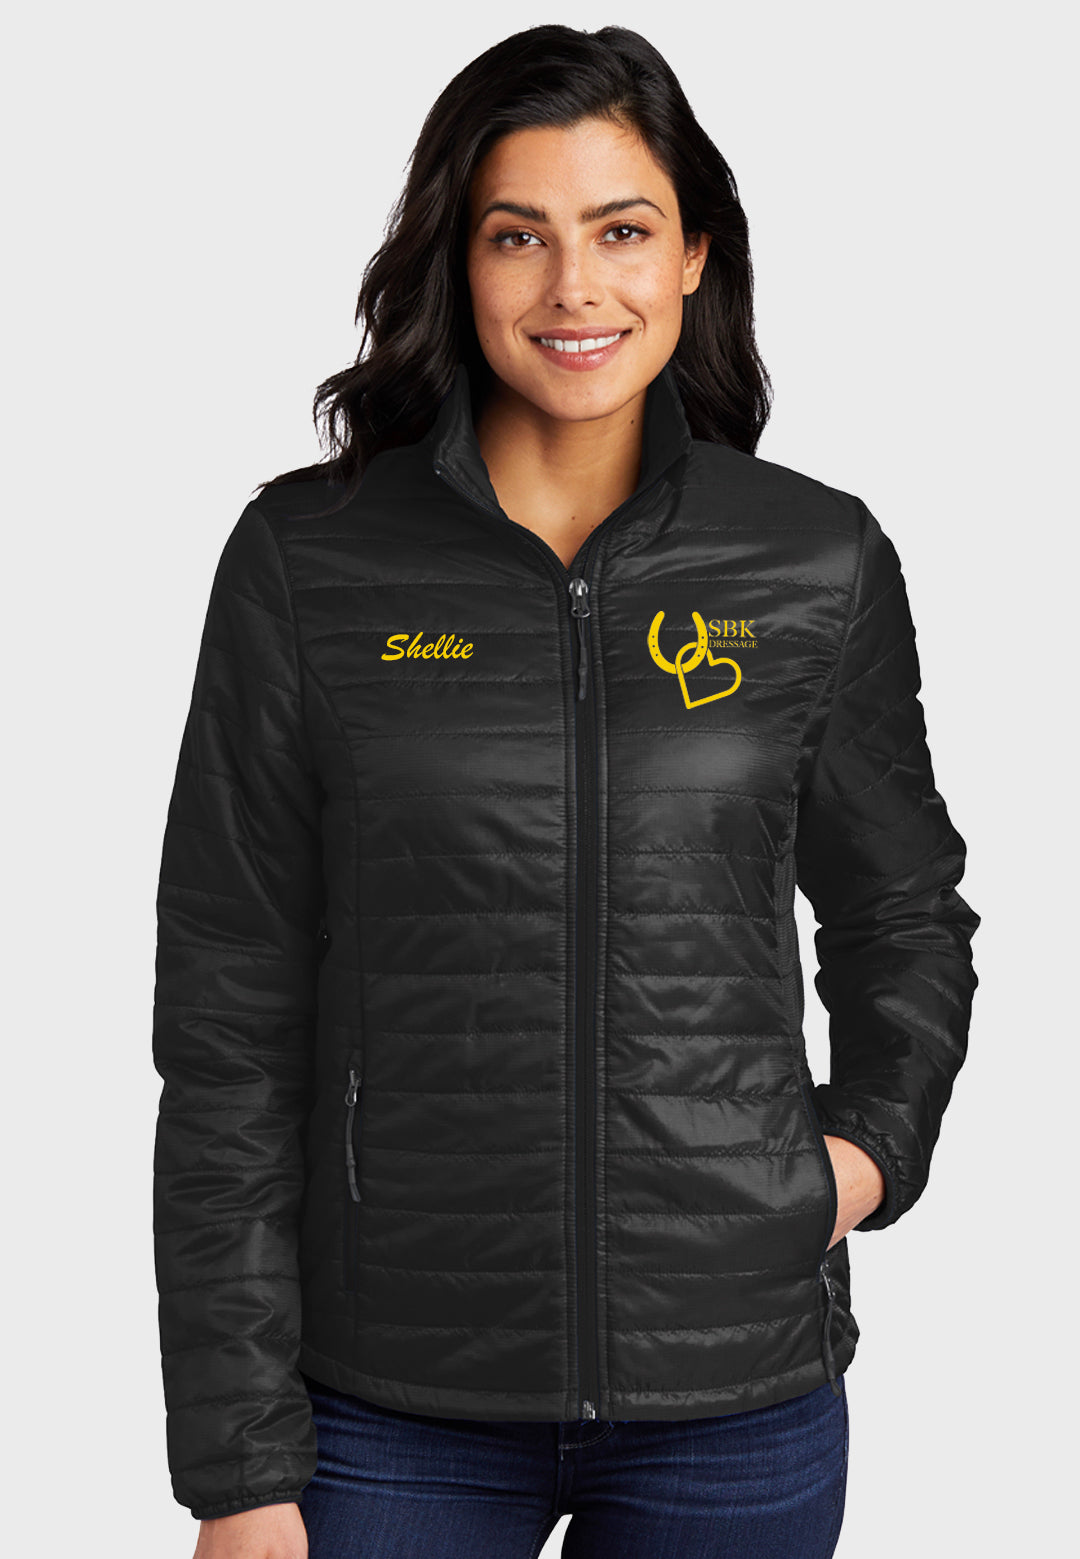 SBK Dressage Port Authority® Ladies Packable Down Jacket, 2 Color Options